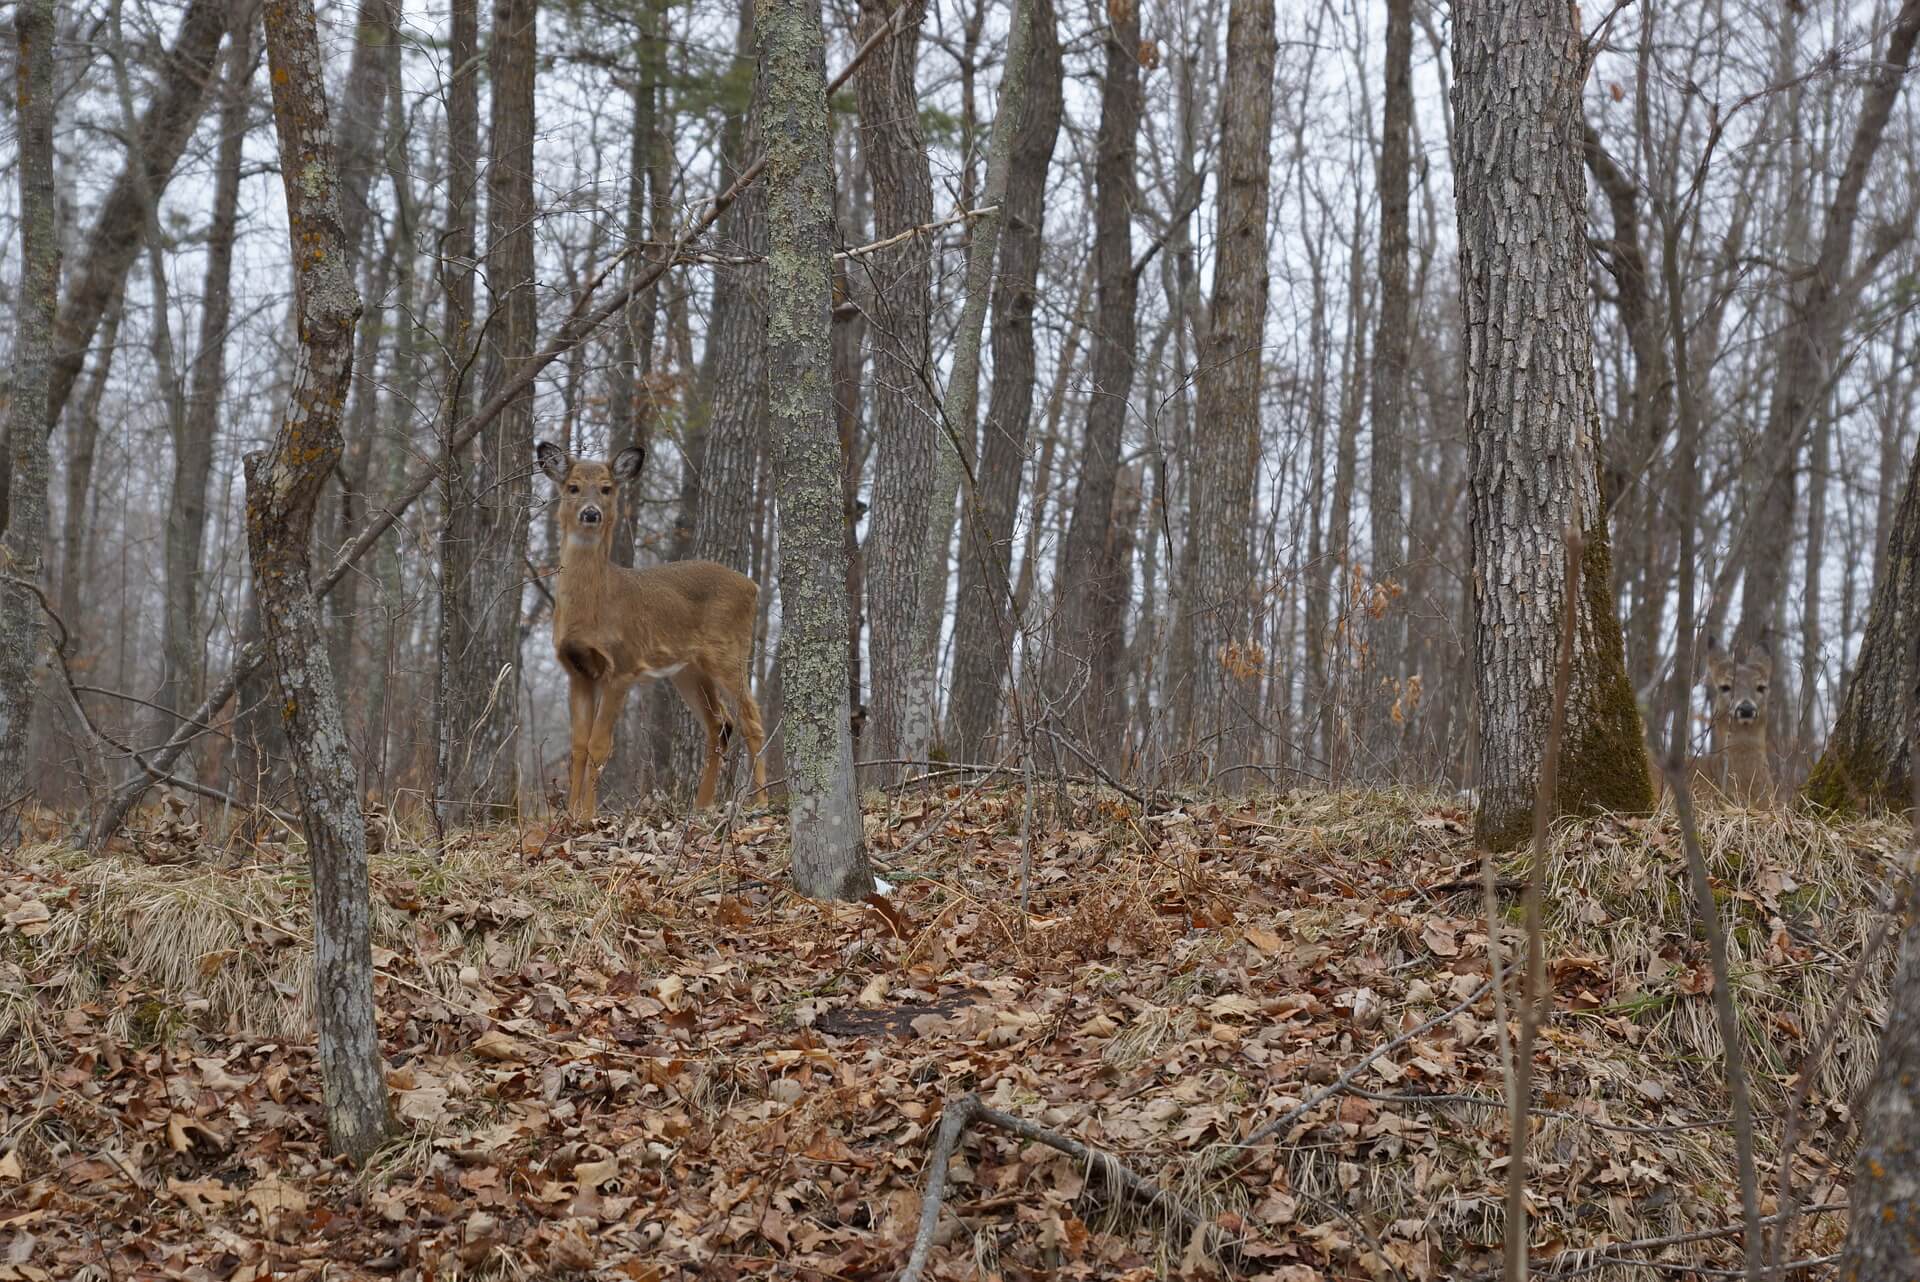 https://pixabay.com/en/camouflage-deer-brown-nature-1309811/